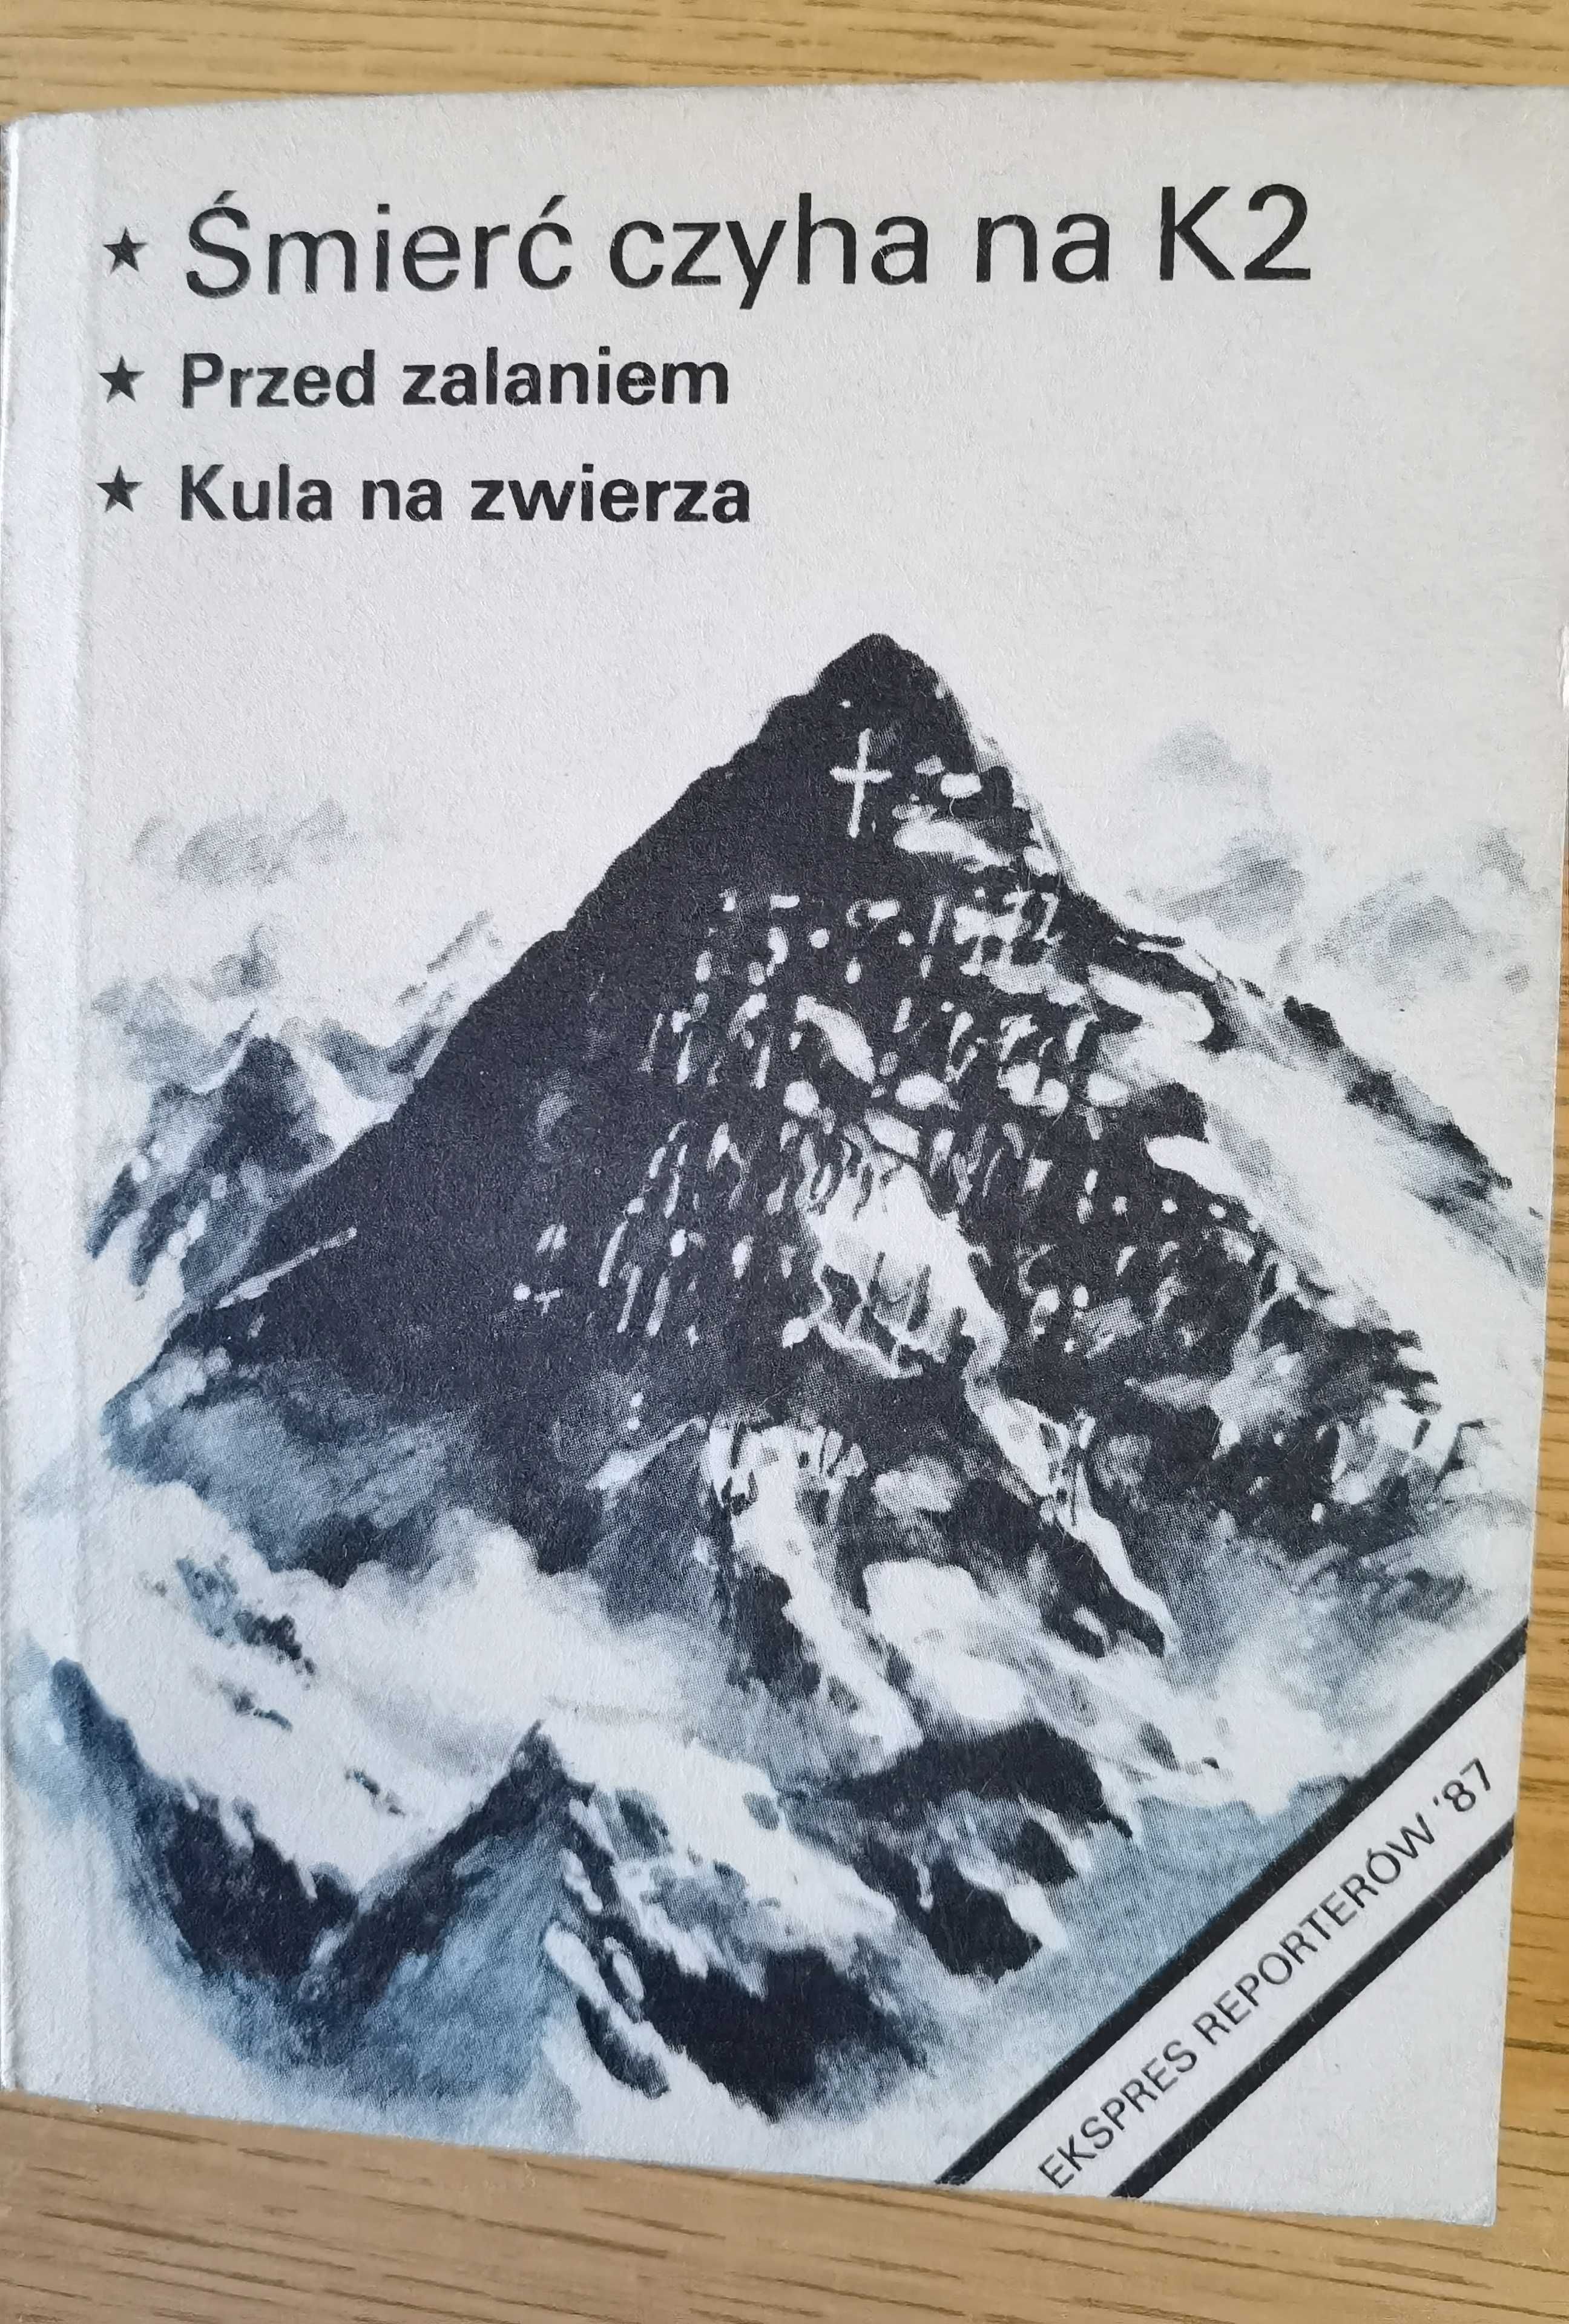 Śmierć czyha na K2, KAW 1987